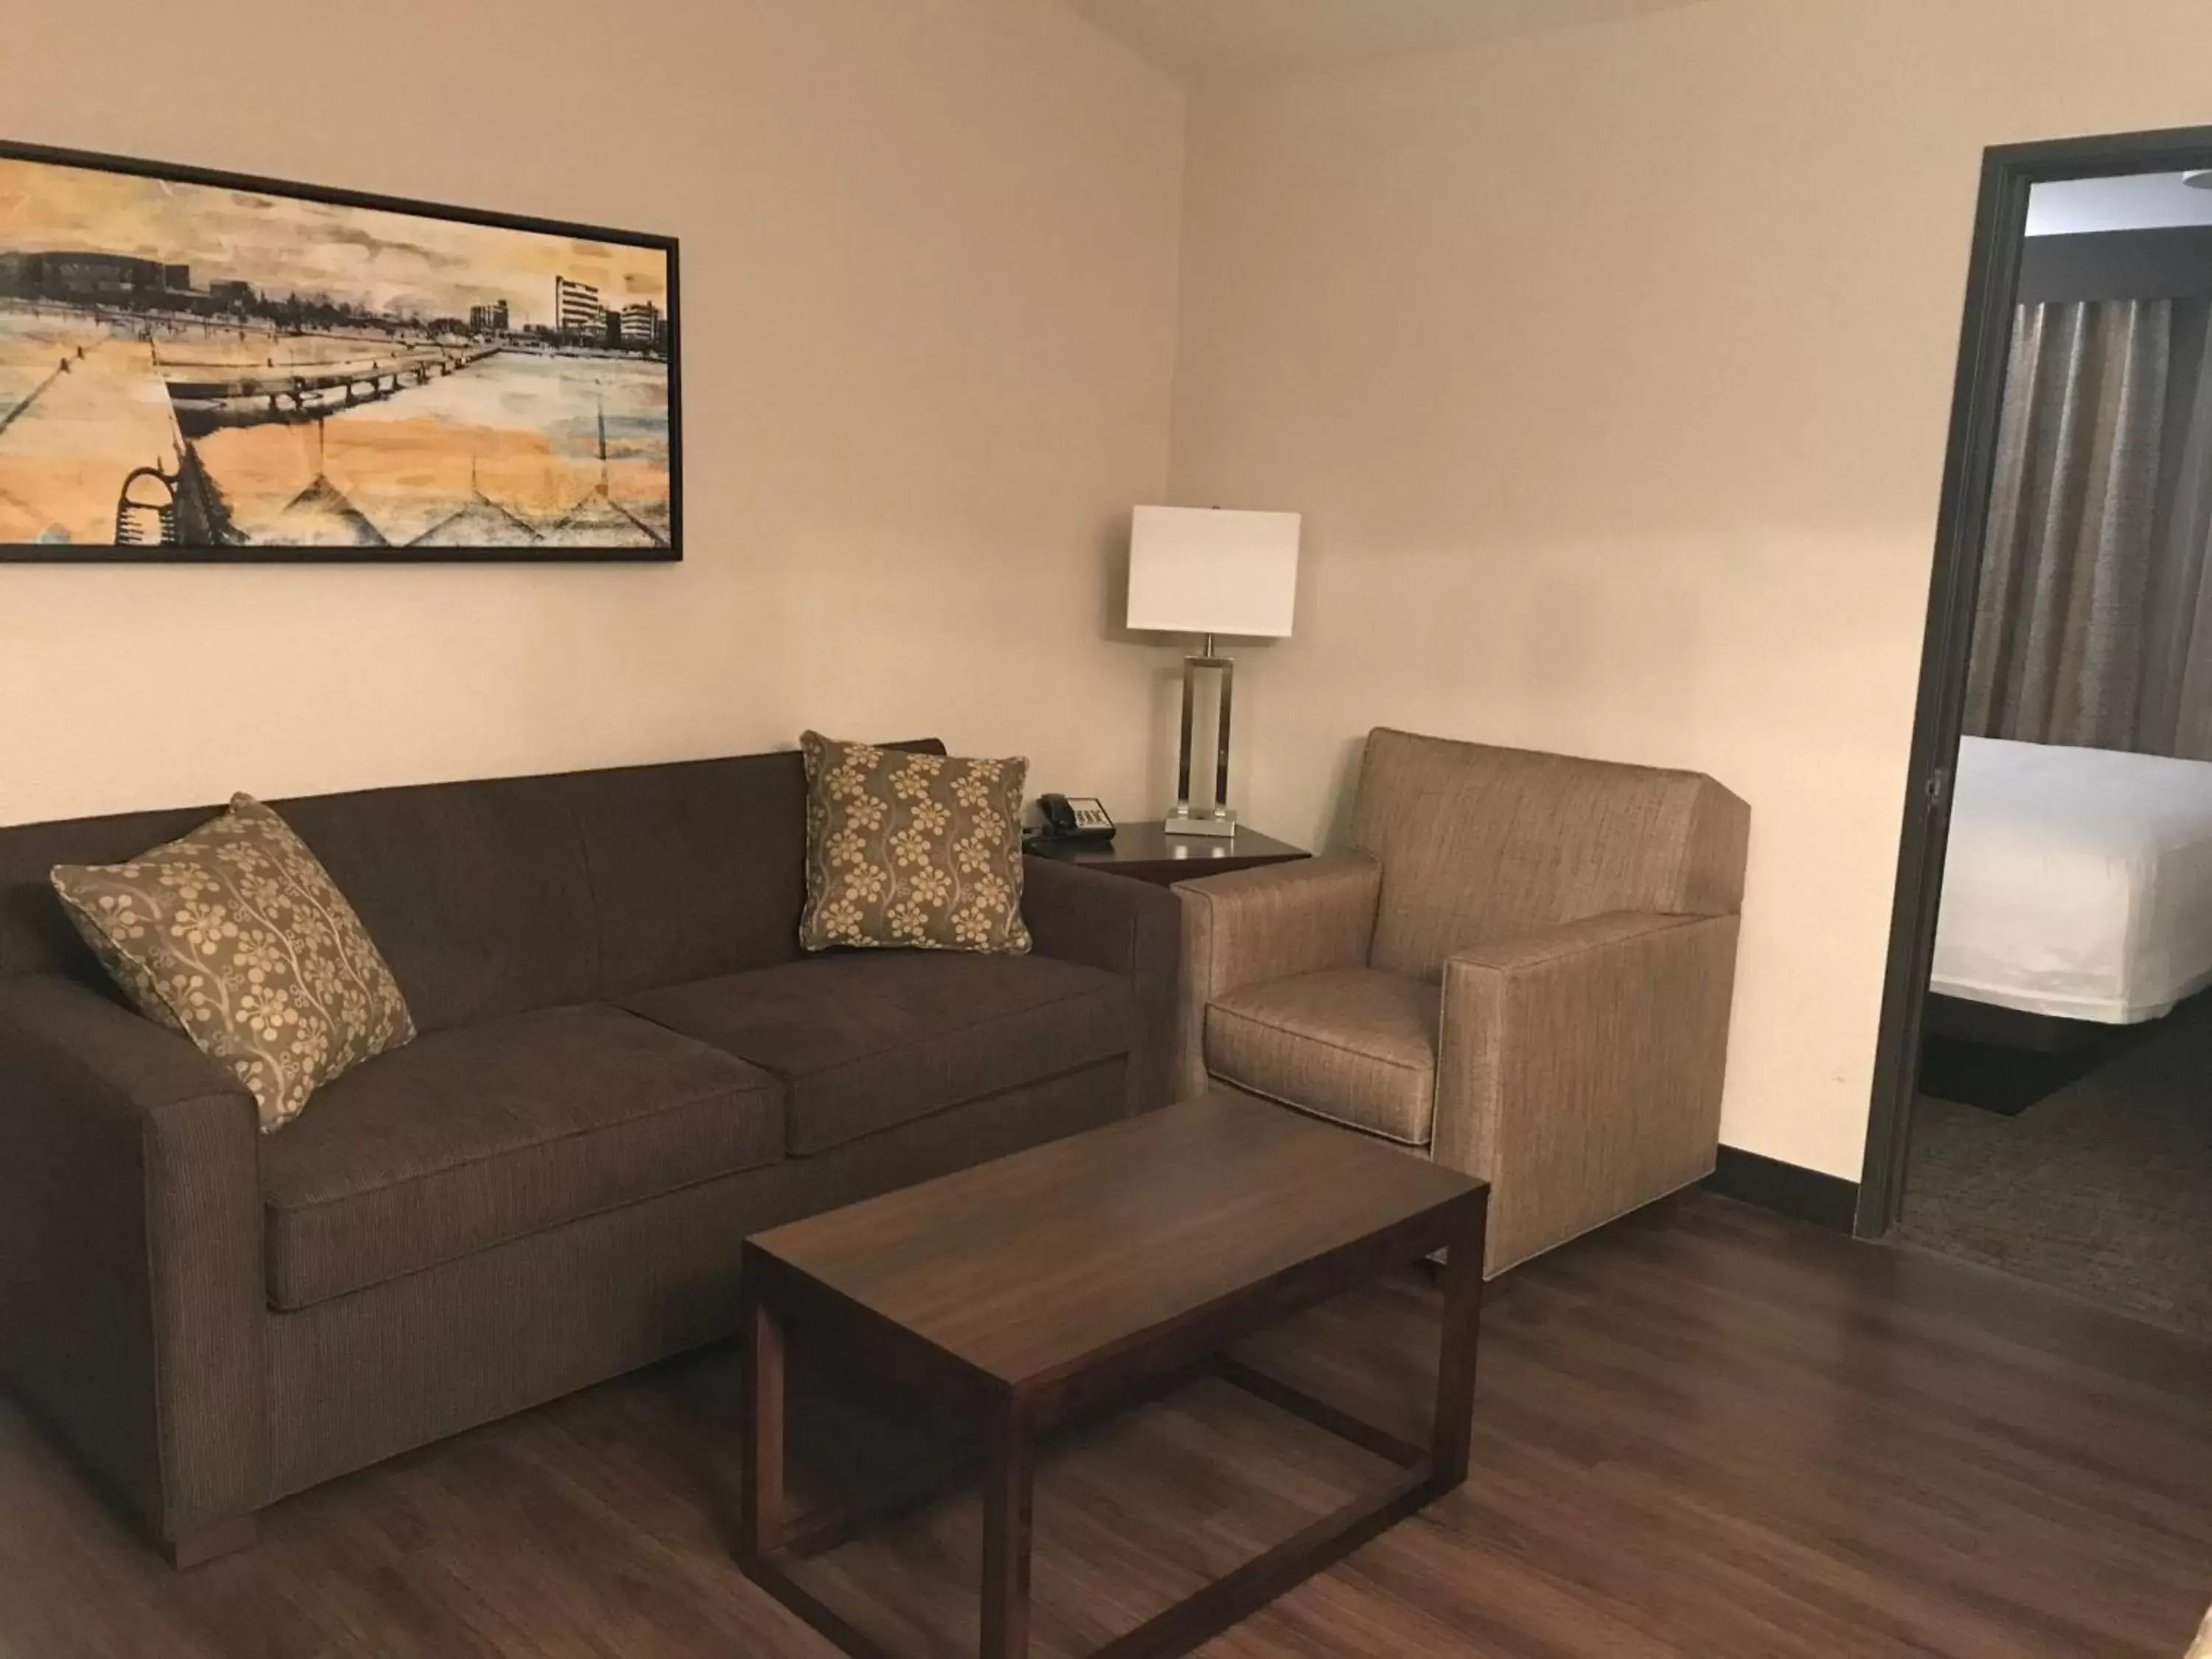 Living room, Seating Area in Best Western Premier Bridgewood Hotel Resort